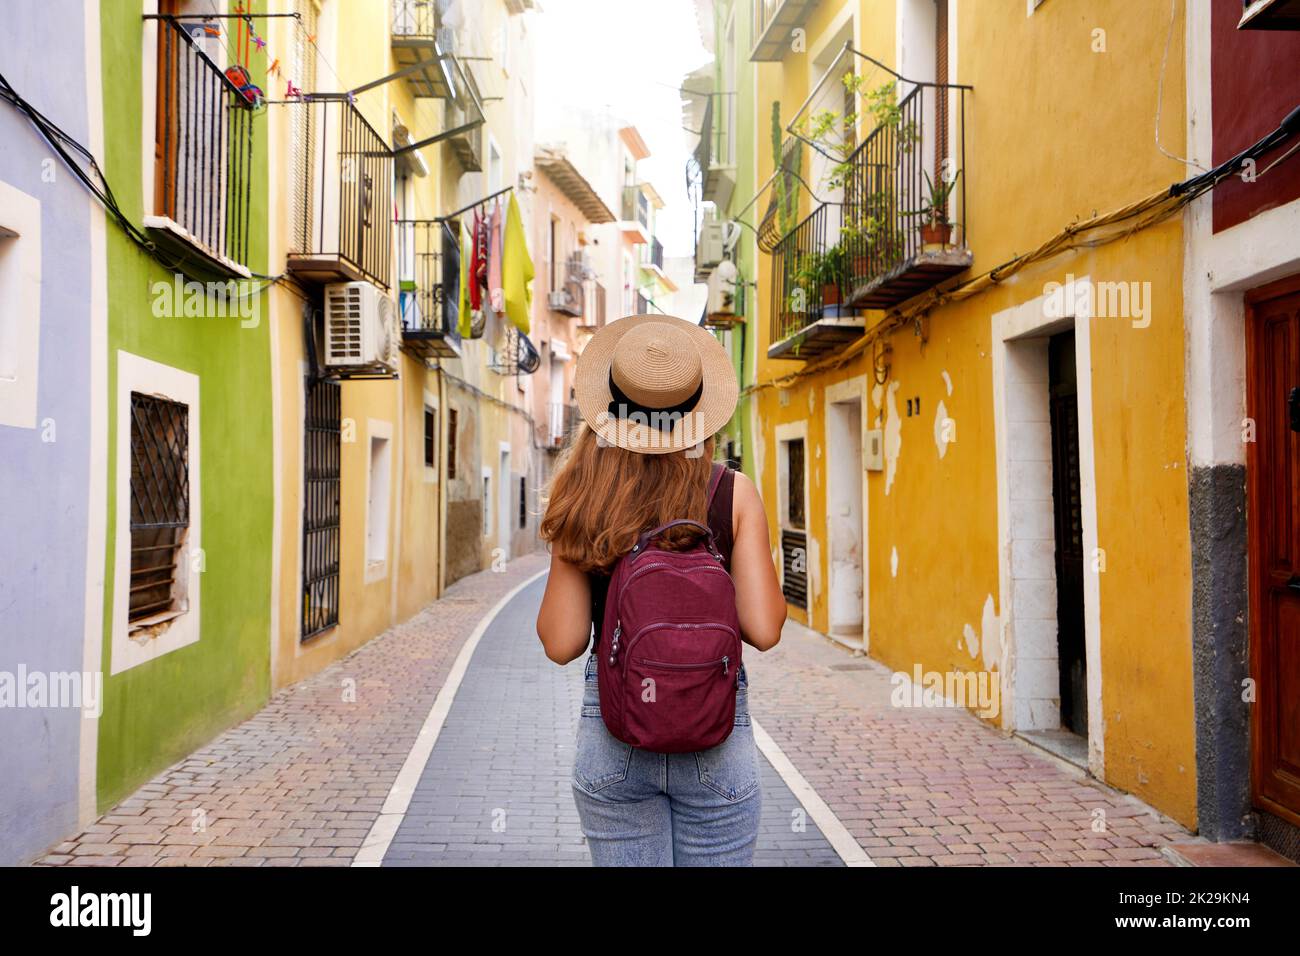 Reisen in Europa. Fröhliches Touristenmädchen, das das bunte spanische Dorf Villajoyosa, Alicante, Spanien besucht. Stockfoto